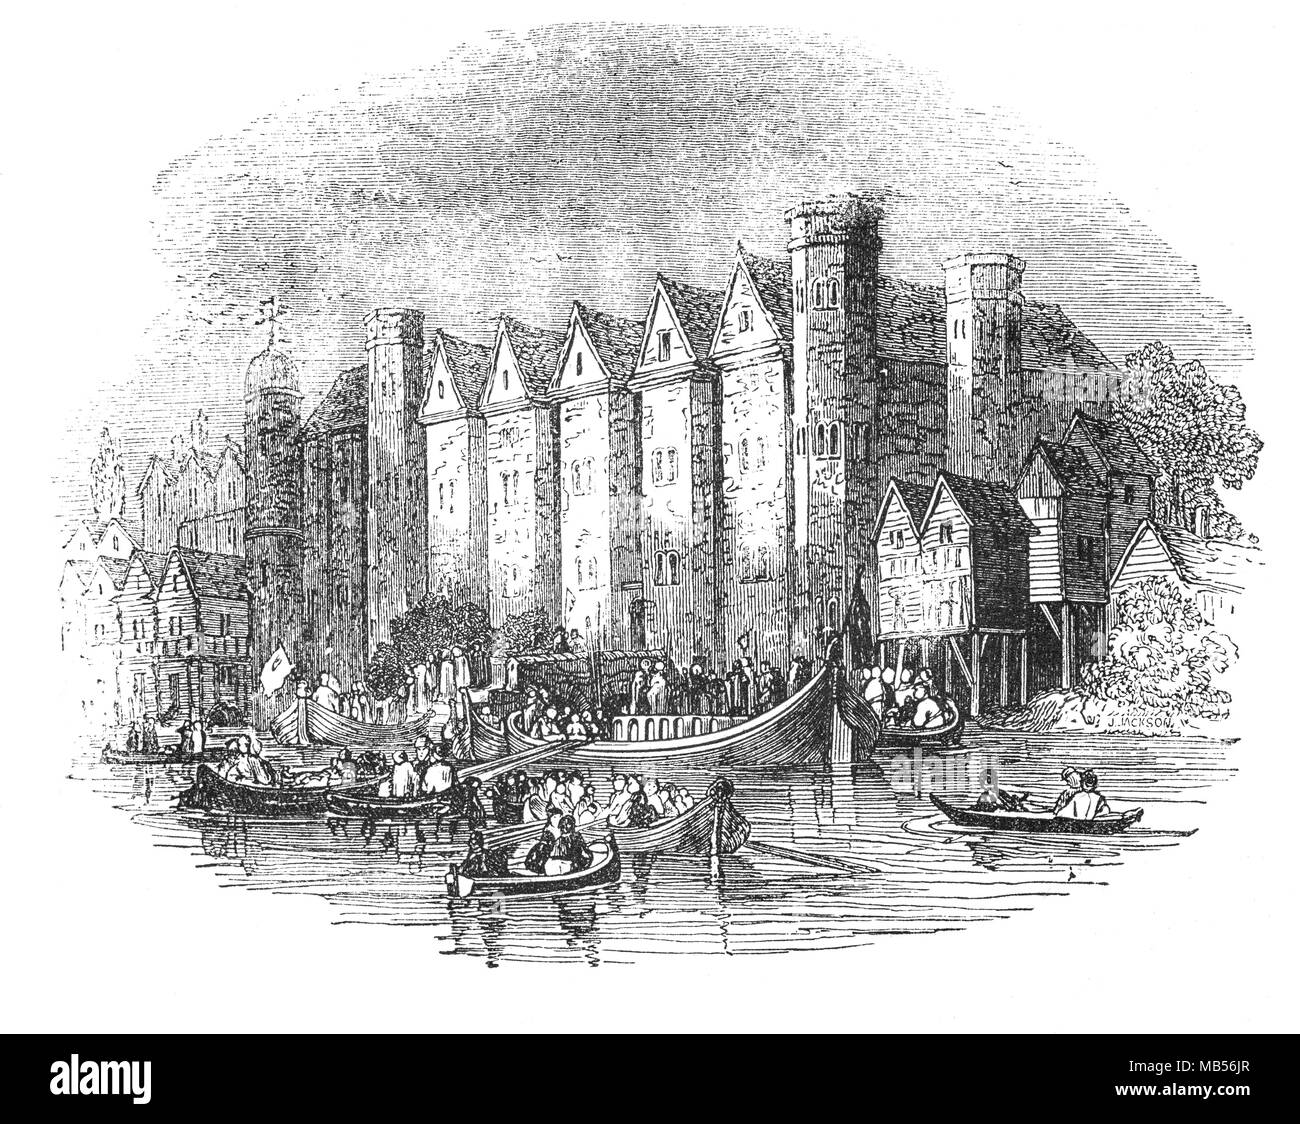 Le Château de Baynard fait référence à un palais médiéval construit au 14ème siècle construit sur des terres qui ont été conquises sur la Tamise. La maison a été reconstruite après 1428, et est devenu le siège londonien de la chambre d'York lors de la guerre des Deux-Roses. Les deux le roi Édouard IV et de la Reine Marie d'Angleterre ont été couronnés au château. Il a été laissé en ruines après le Grand Incendie de Londres en 1666. Banque D'Images